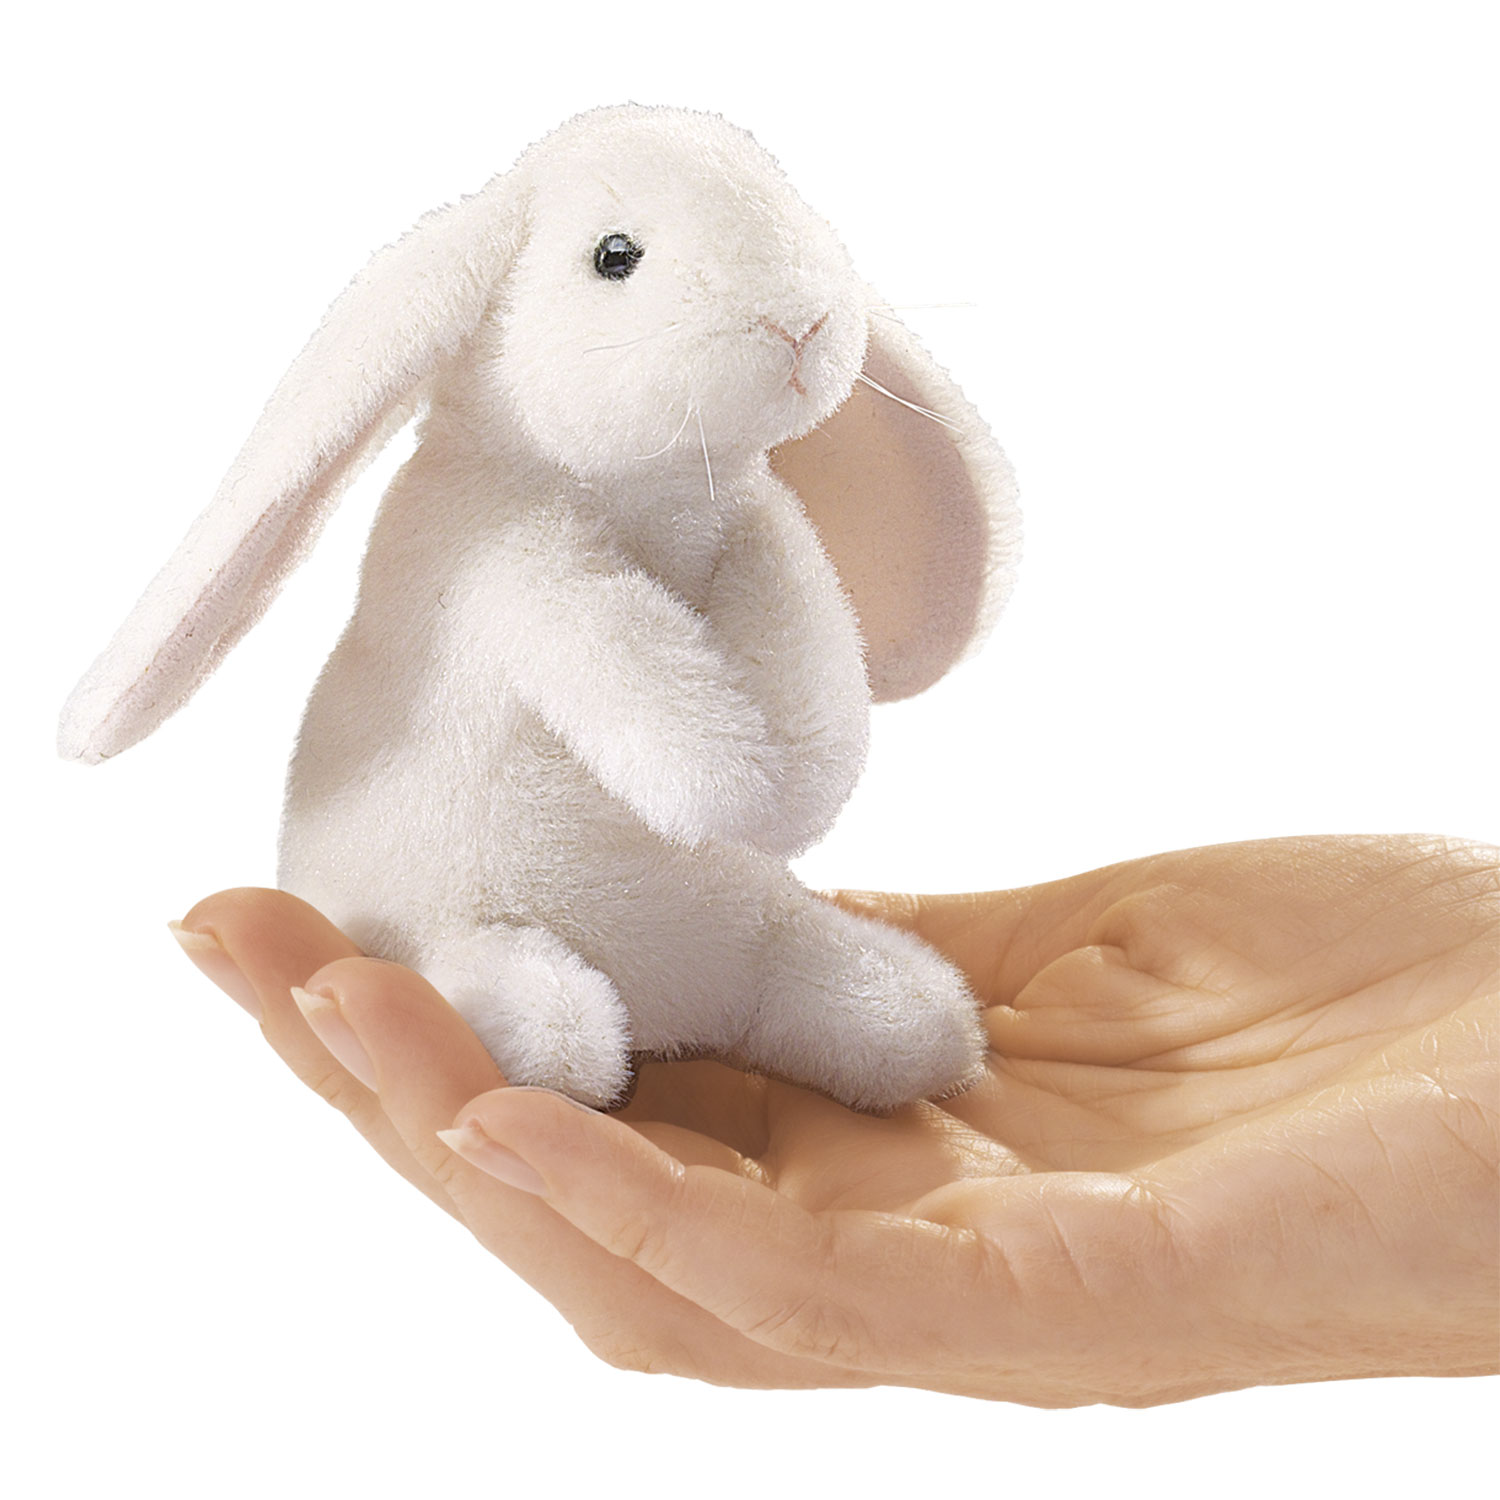 Mini Hängeohrhase / Mini Lop Ear Rabbit